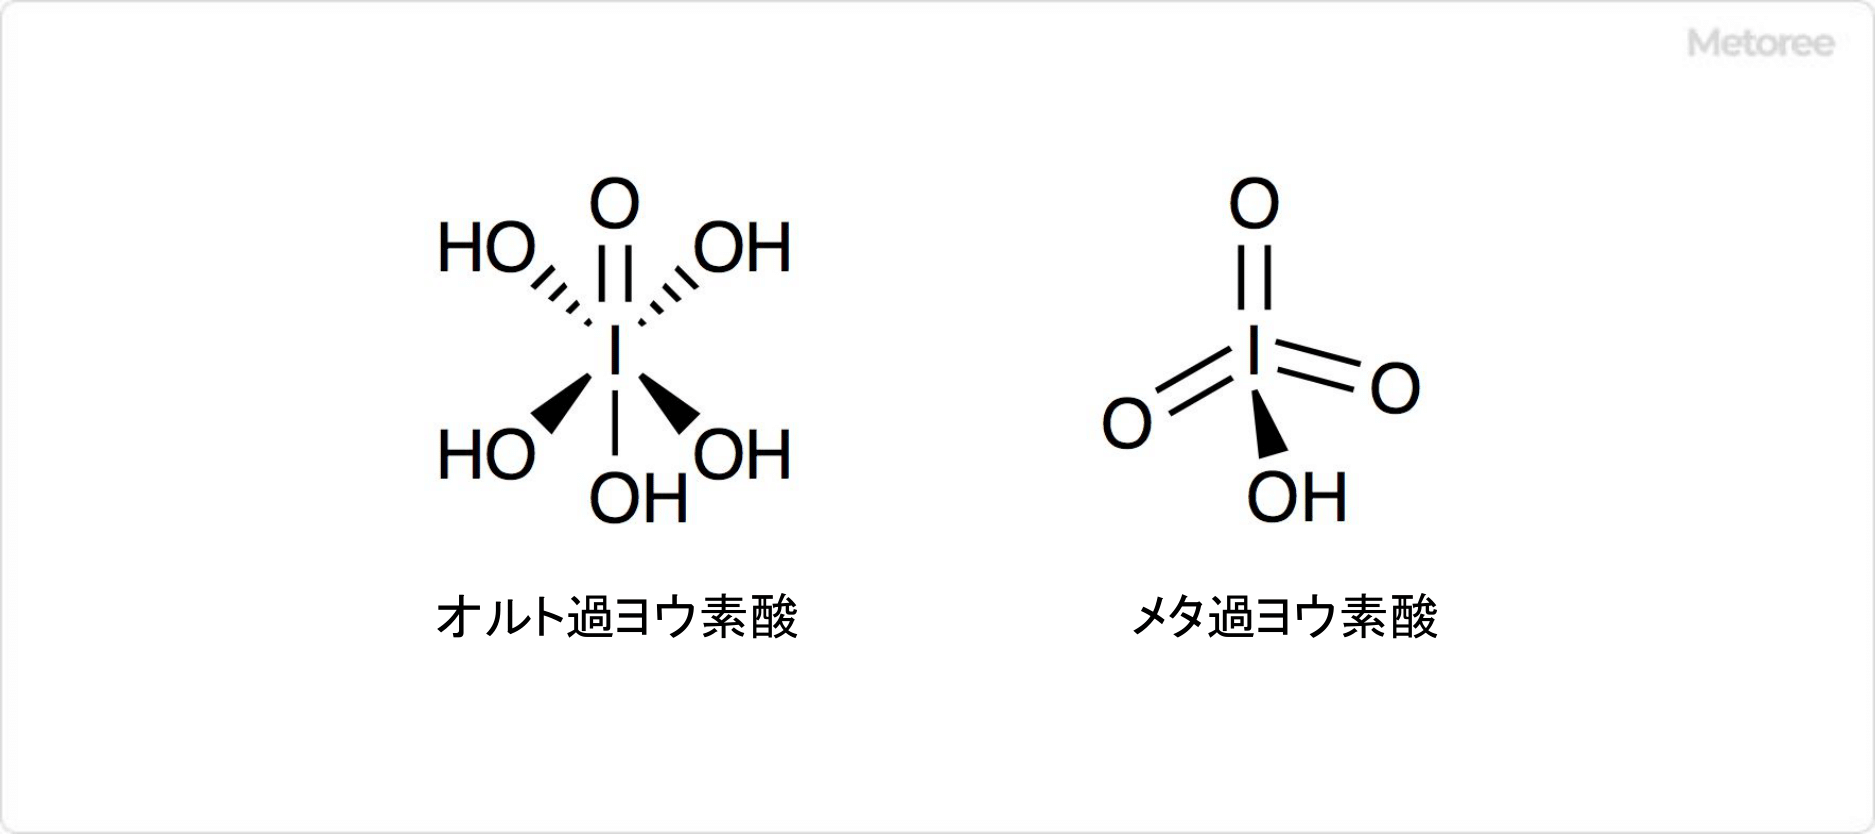 過ヨウ素酸の構造